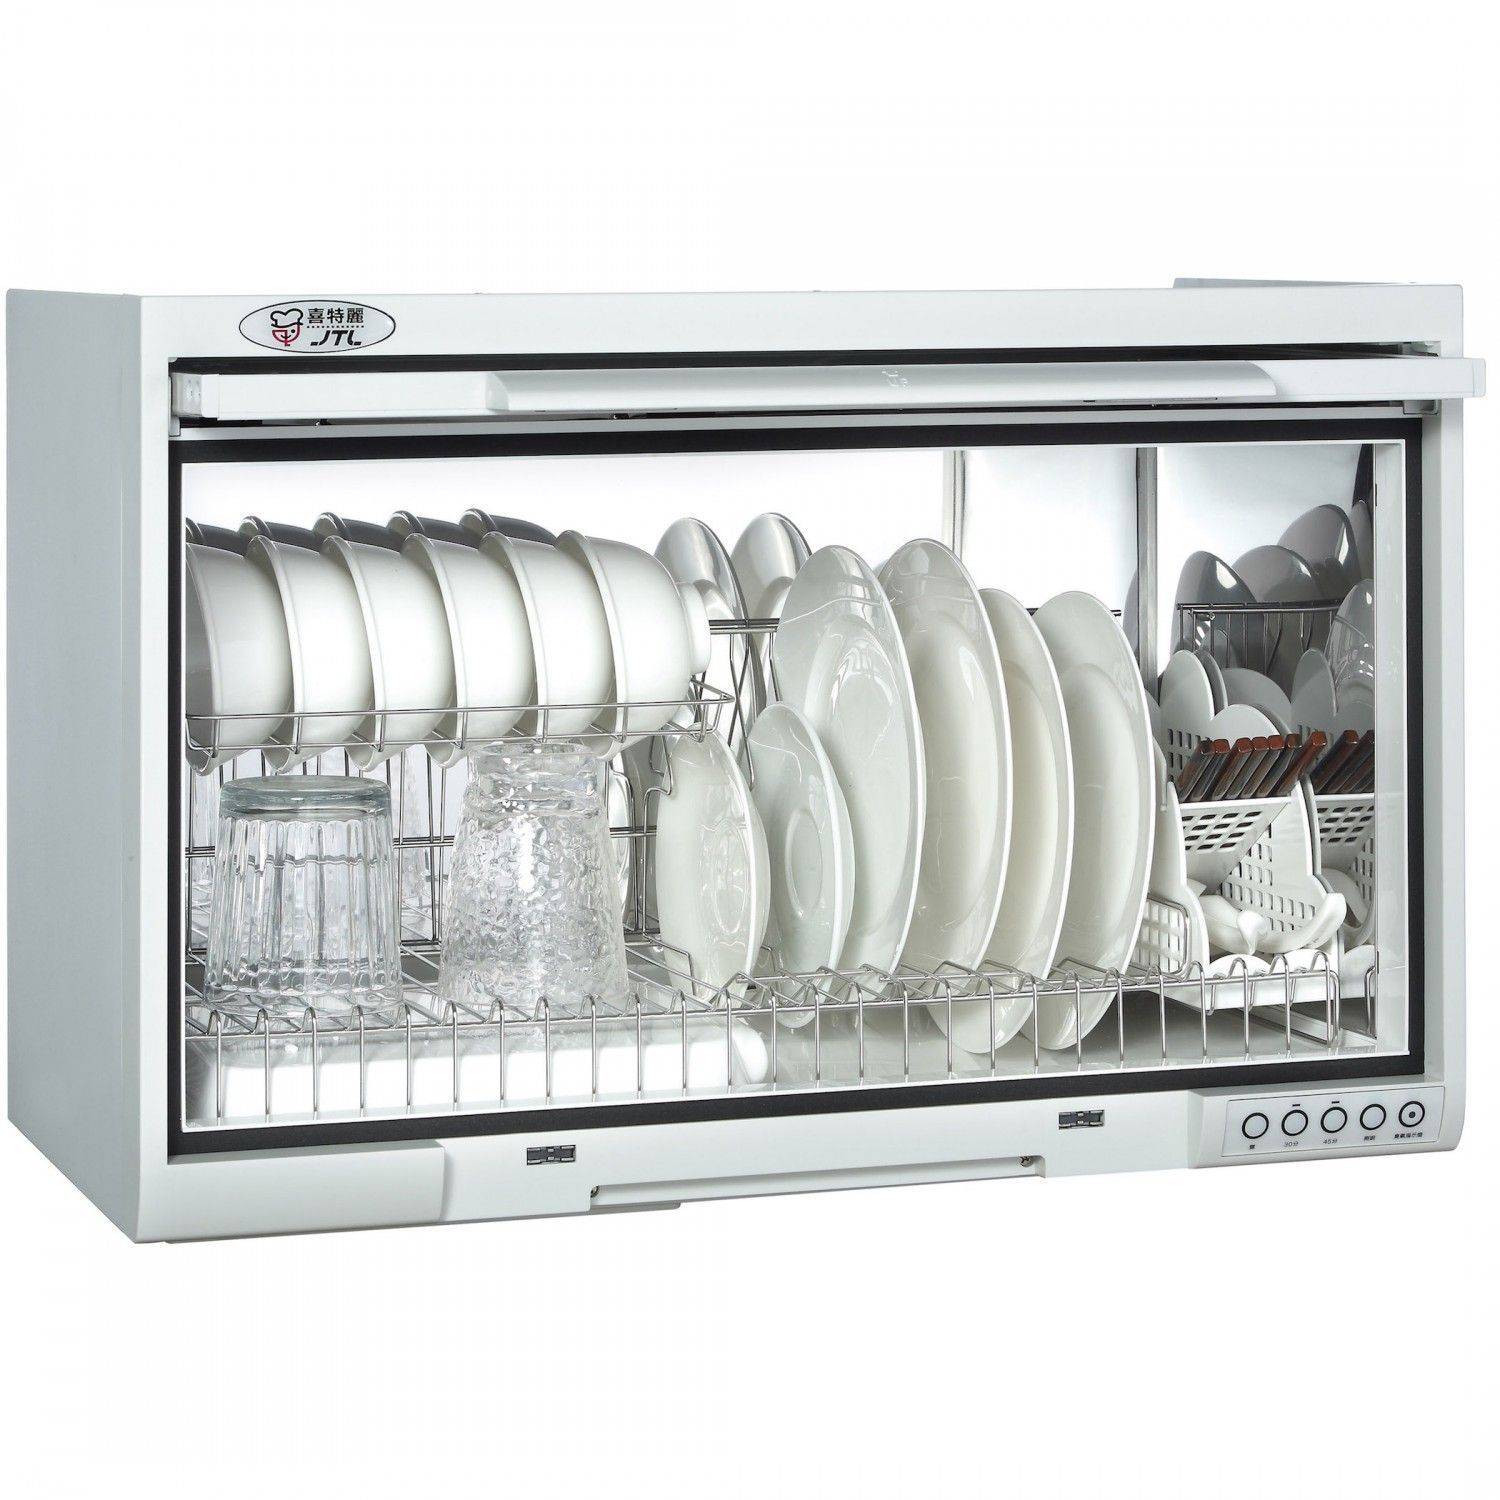 喜特麗 JT-3760Q  臭氧型烘碗機-塑膠筷架-60cm(白色)